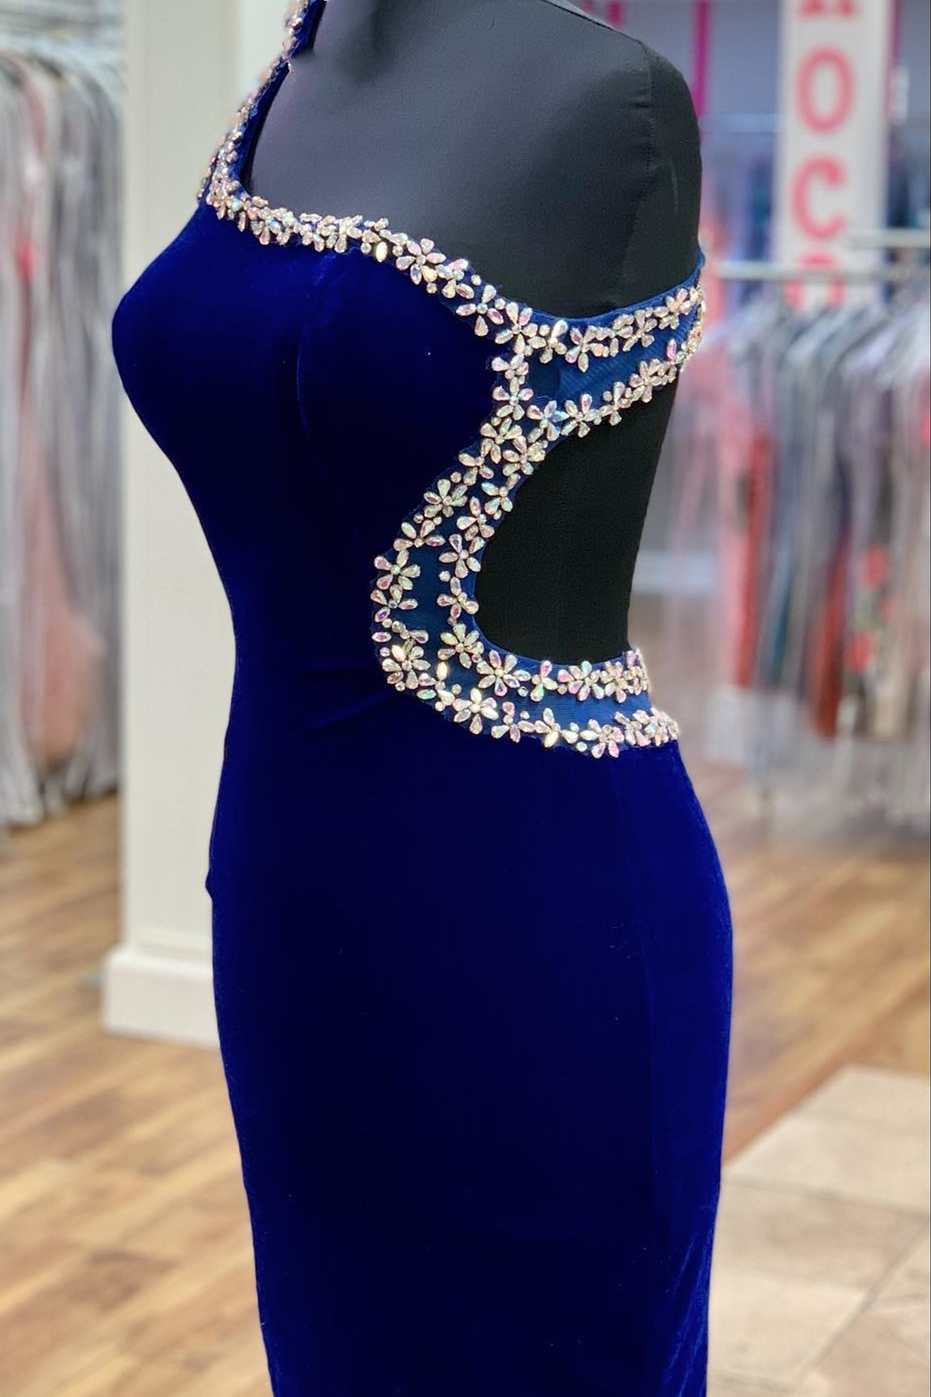 Royal Blue Velvet One-Shoulder Beaded Short Homecoming Dress